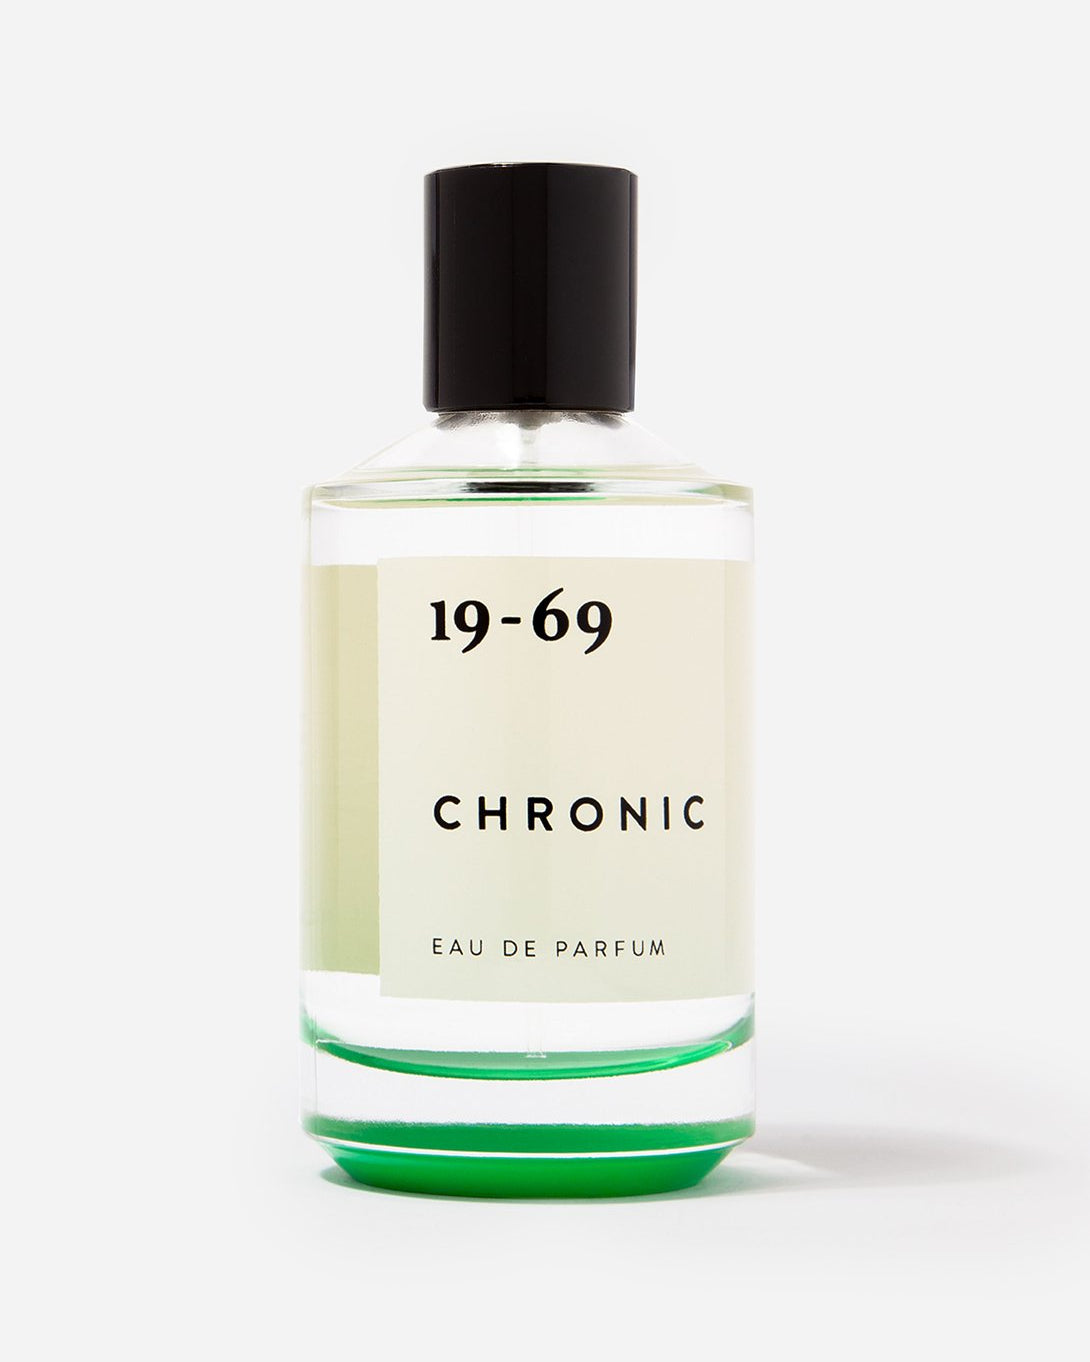 CHRONIC perfume for men and women unisex chronic 100ml 19-69